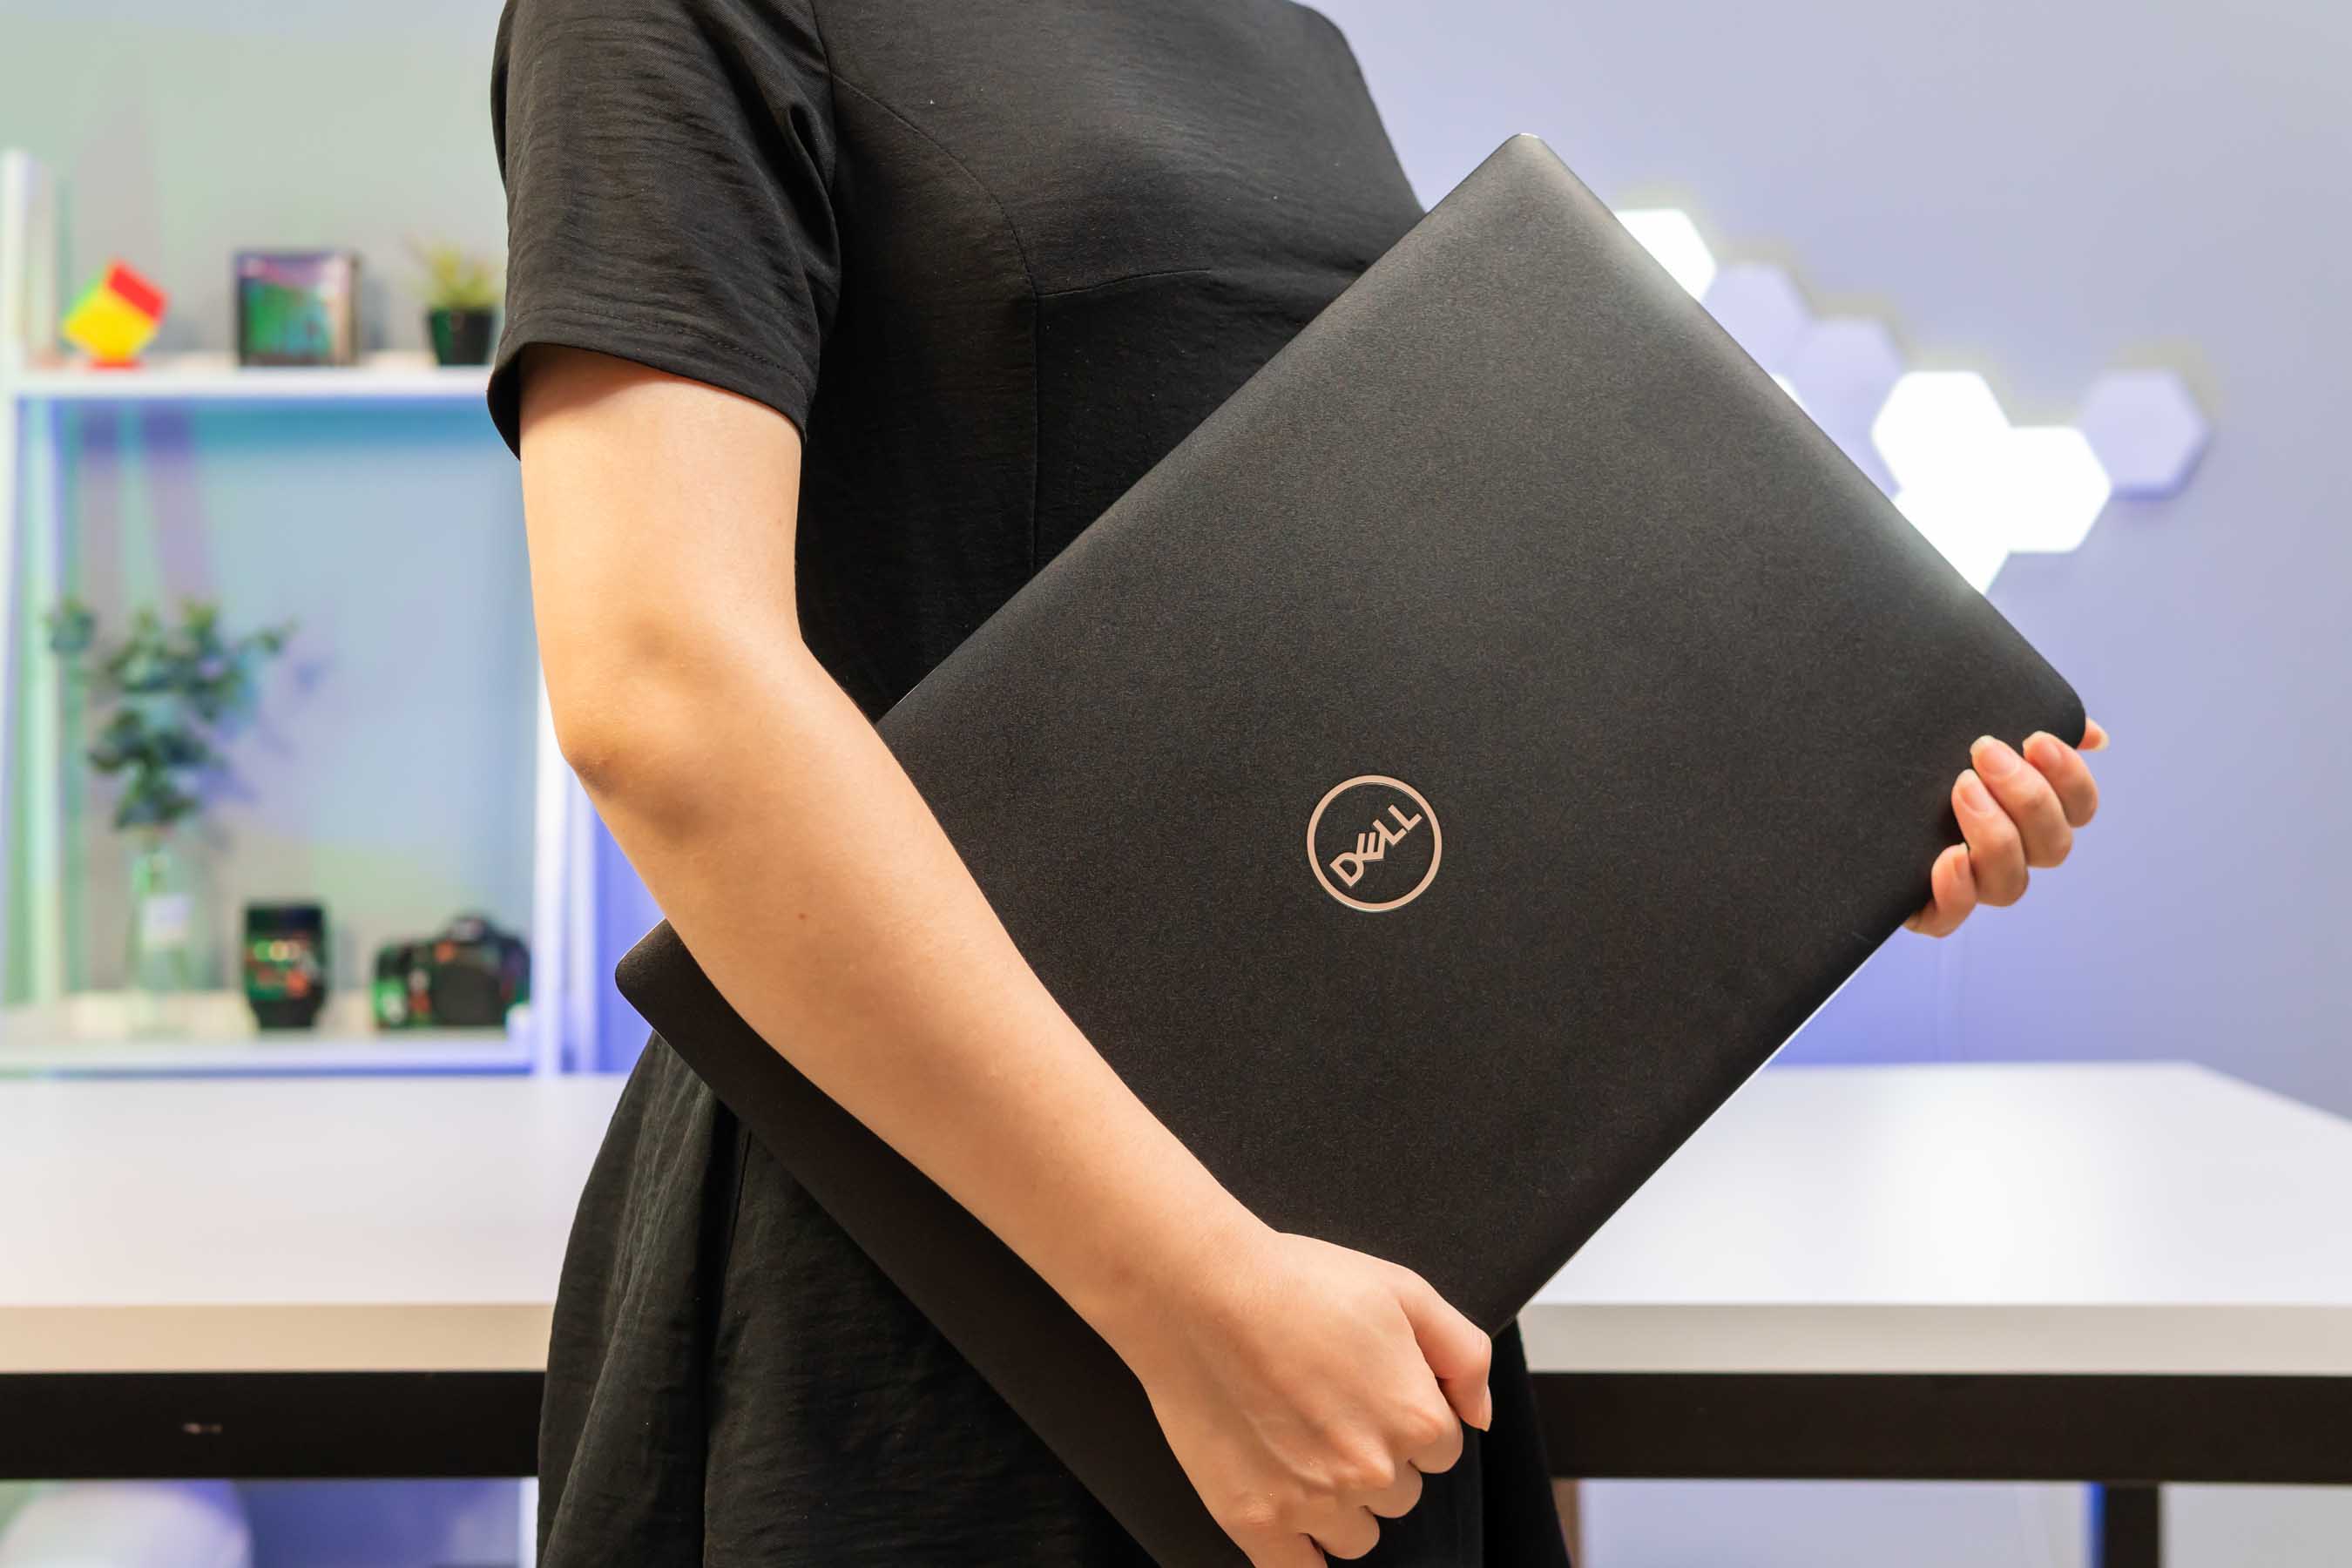 Mua máy tính xách tay Dell chính hãng giá tốt nhất, bền bỉ ổn định dùng 4-5 năm